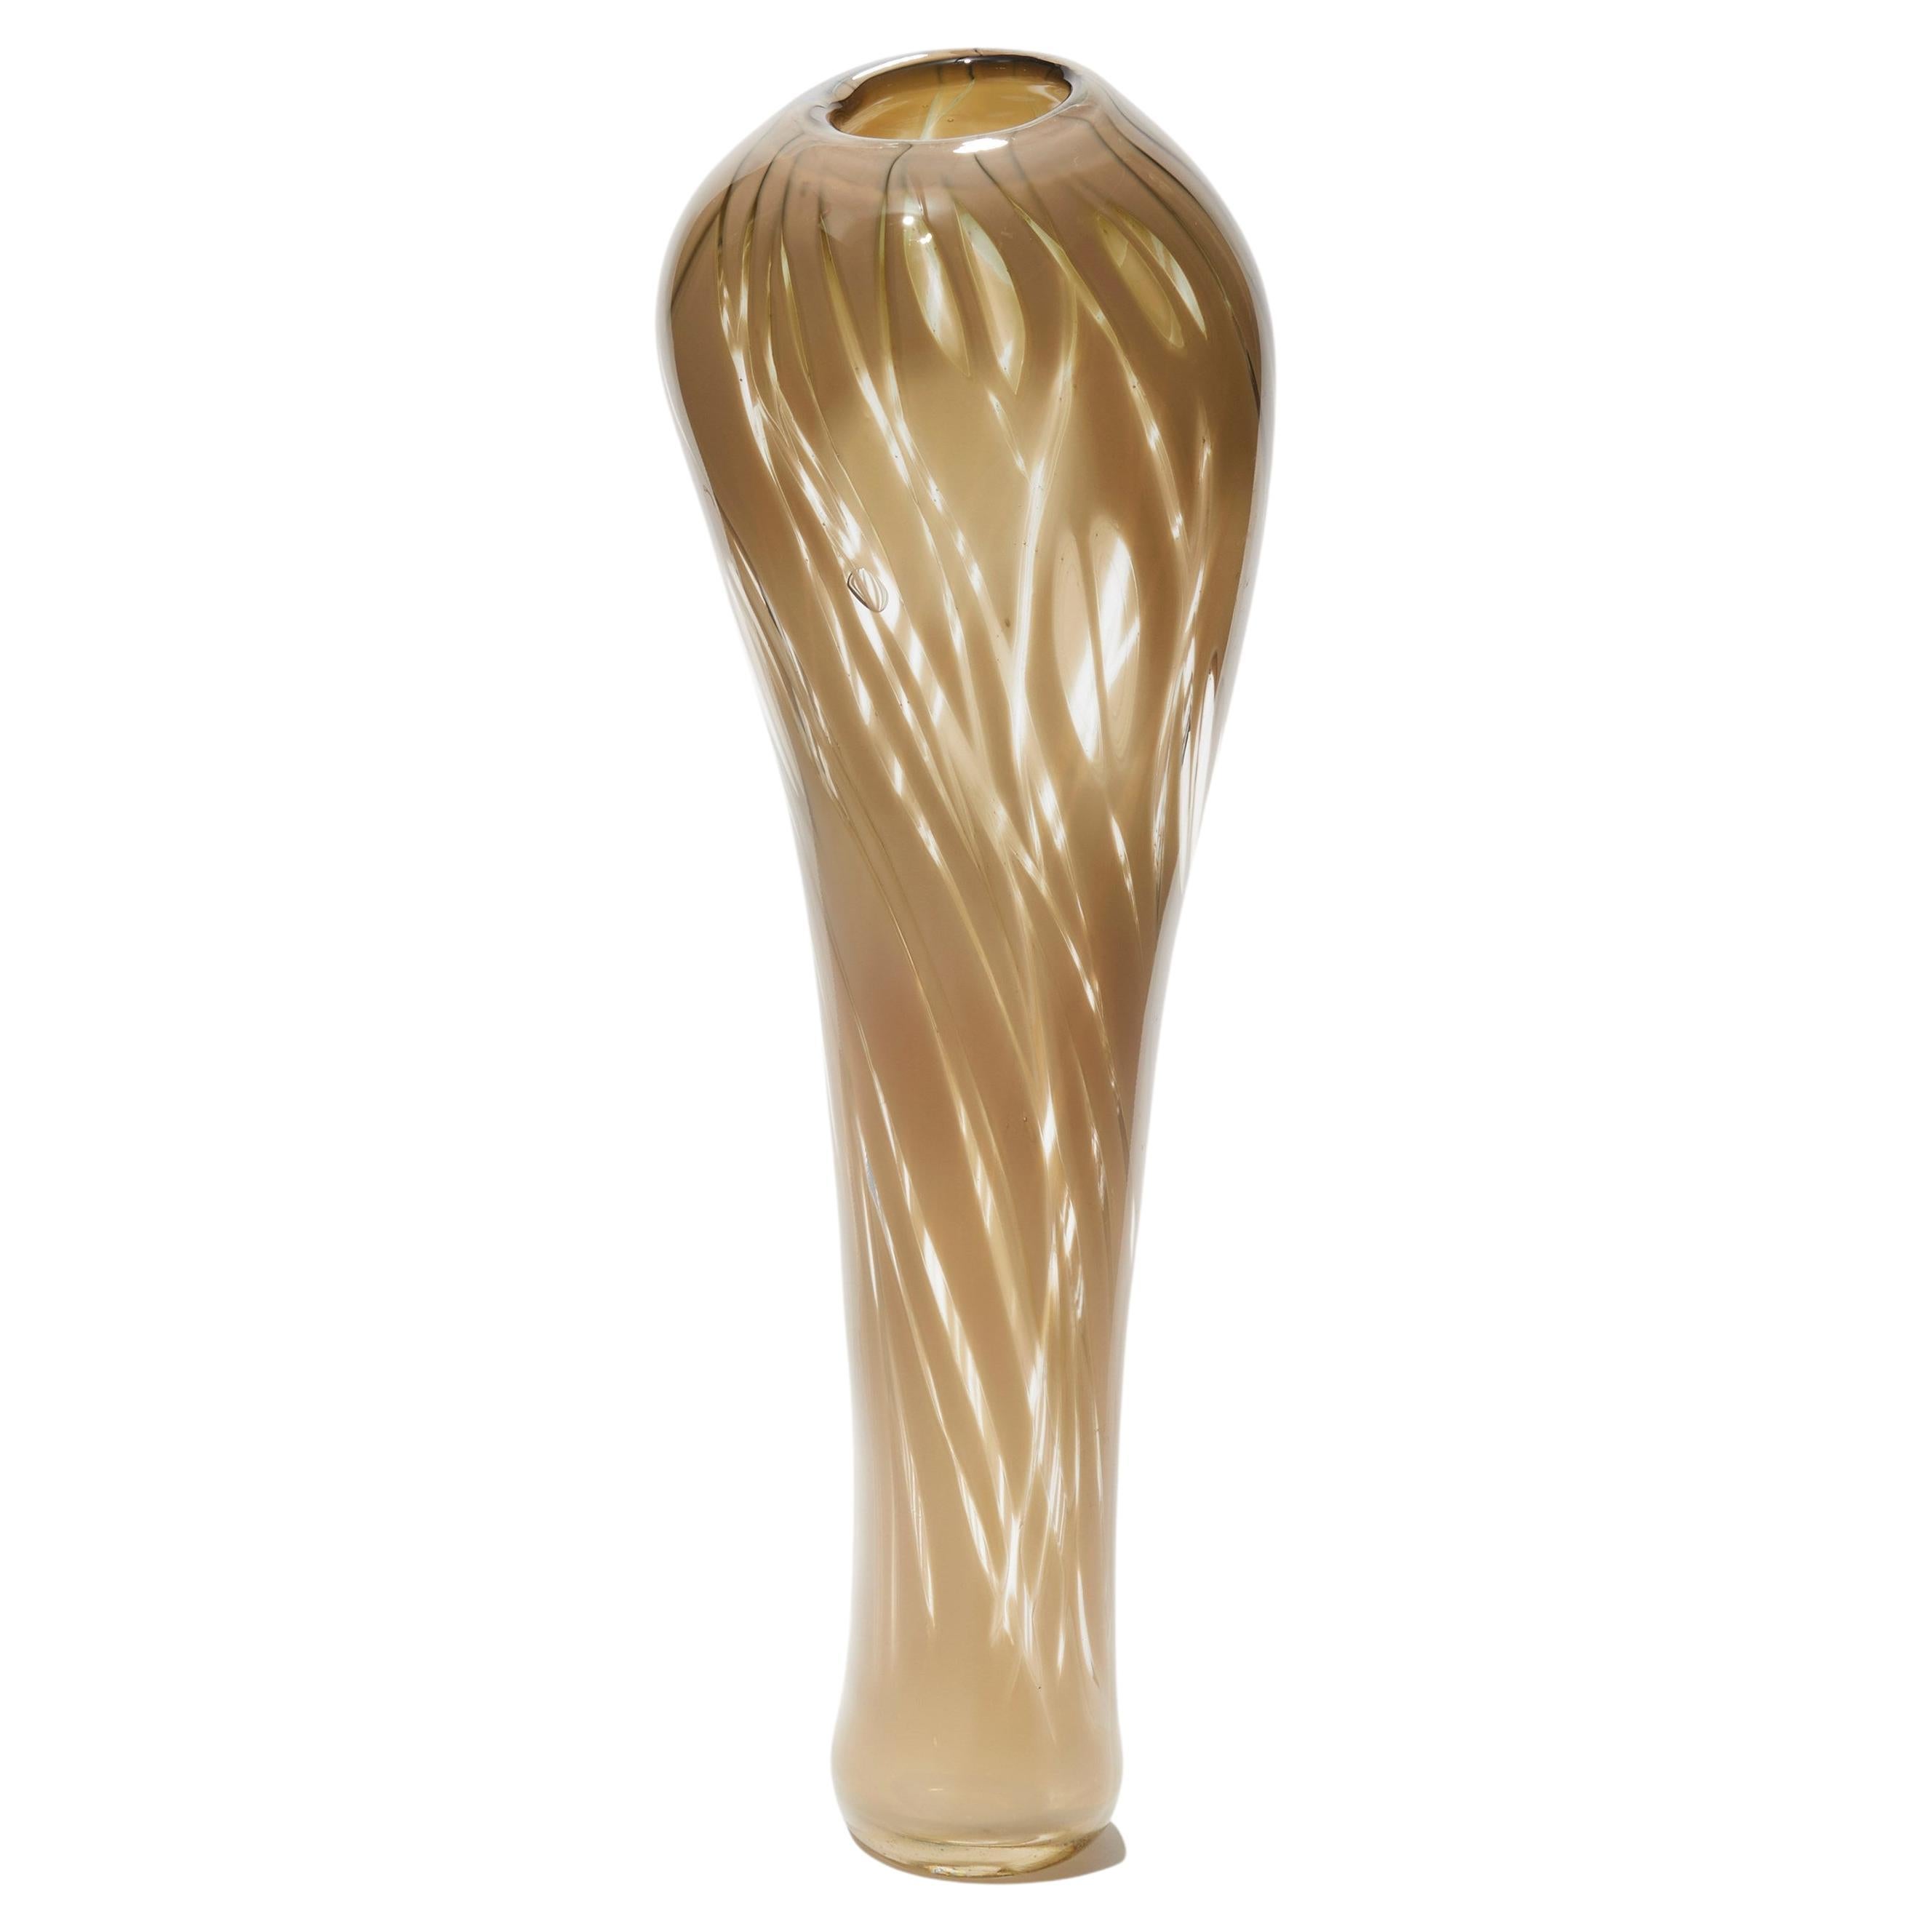  Cotinus I, vase sculptural fauve / nu / beige soufflé à la bouche par Michèle Oberdieck